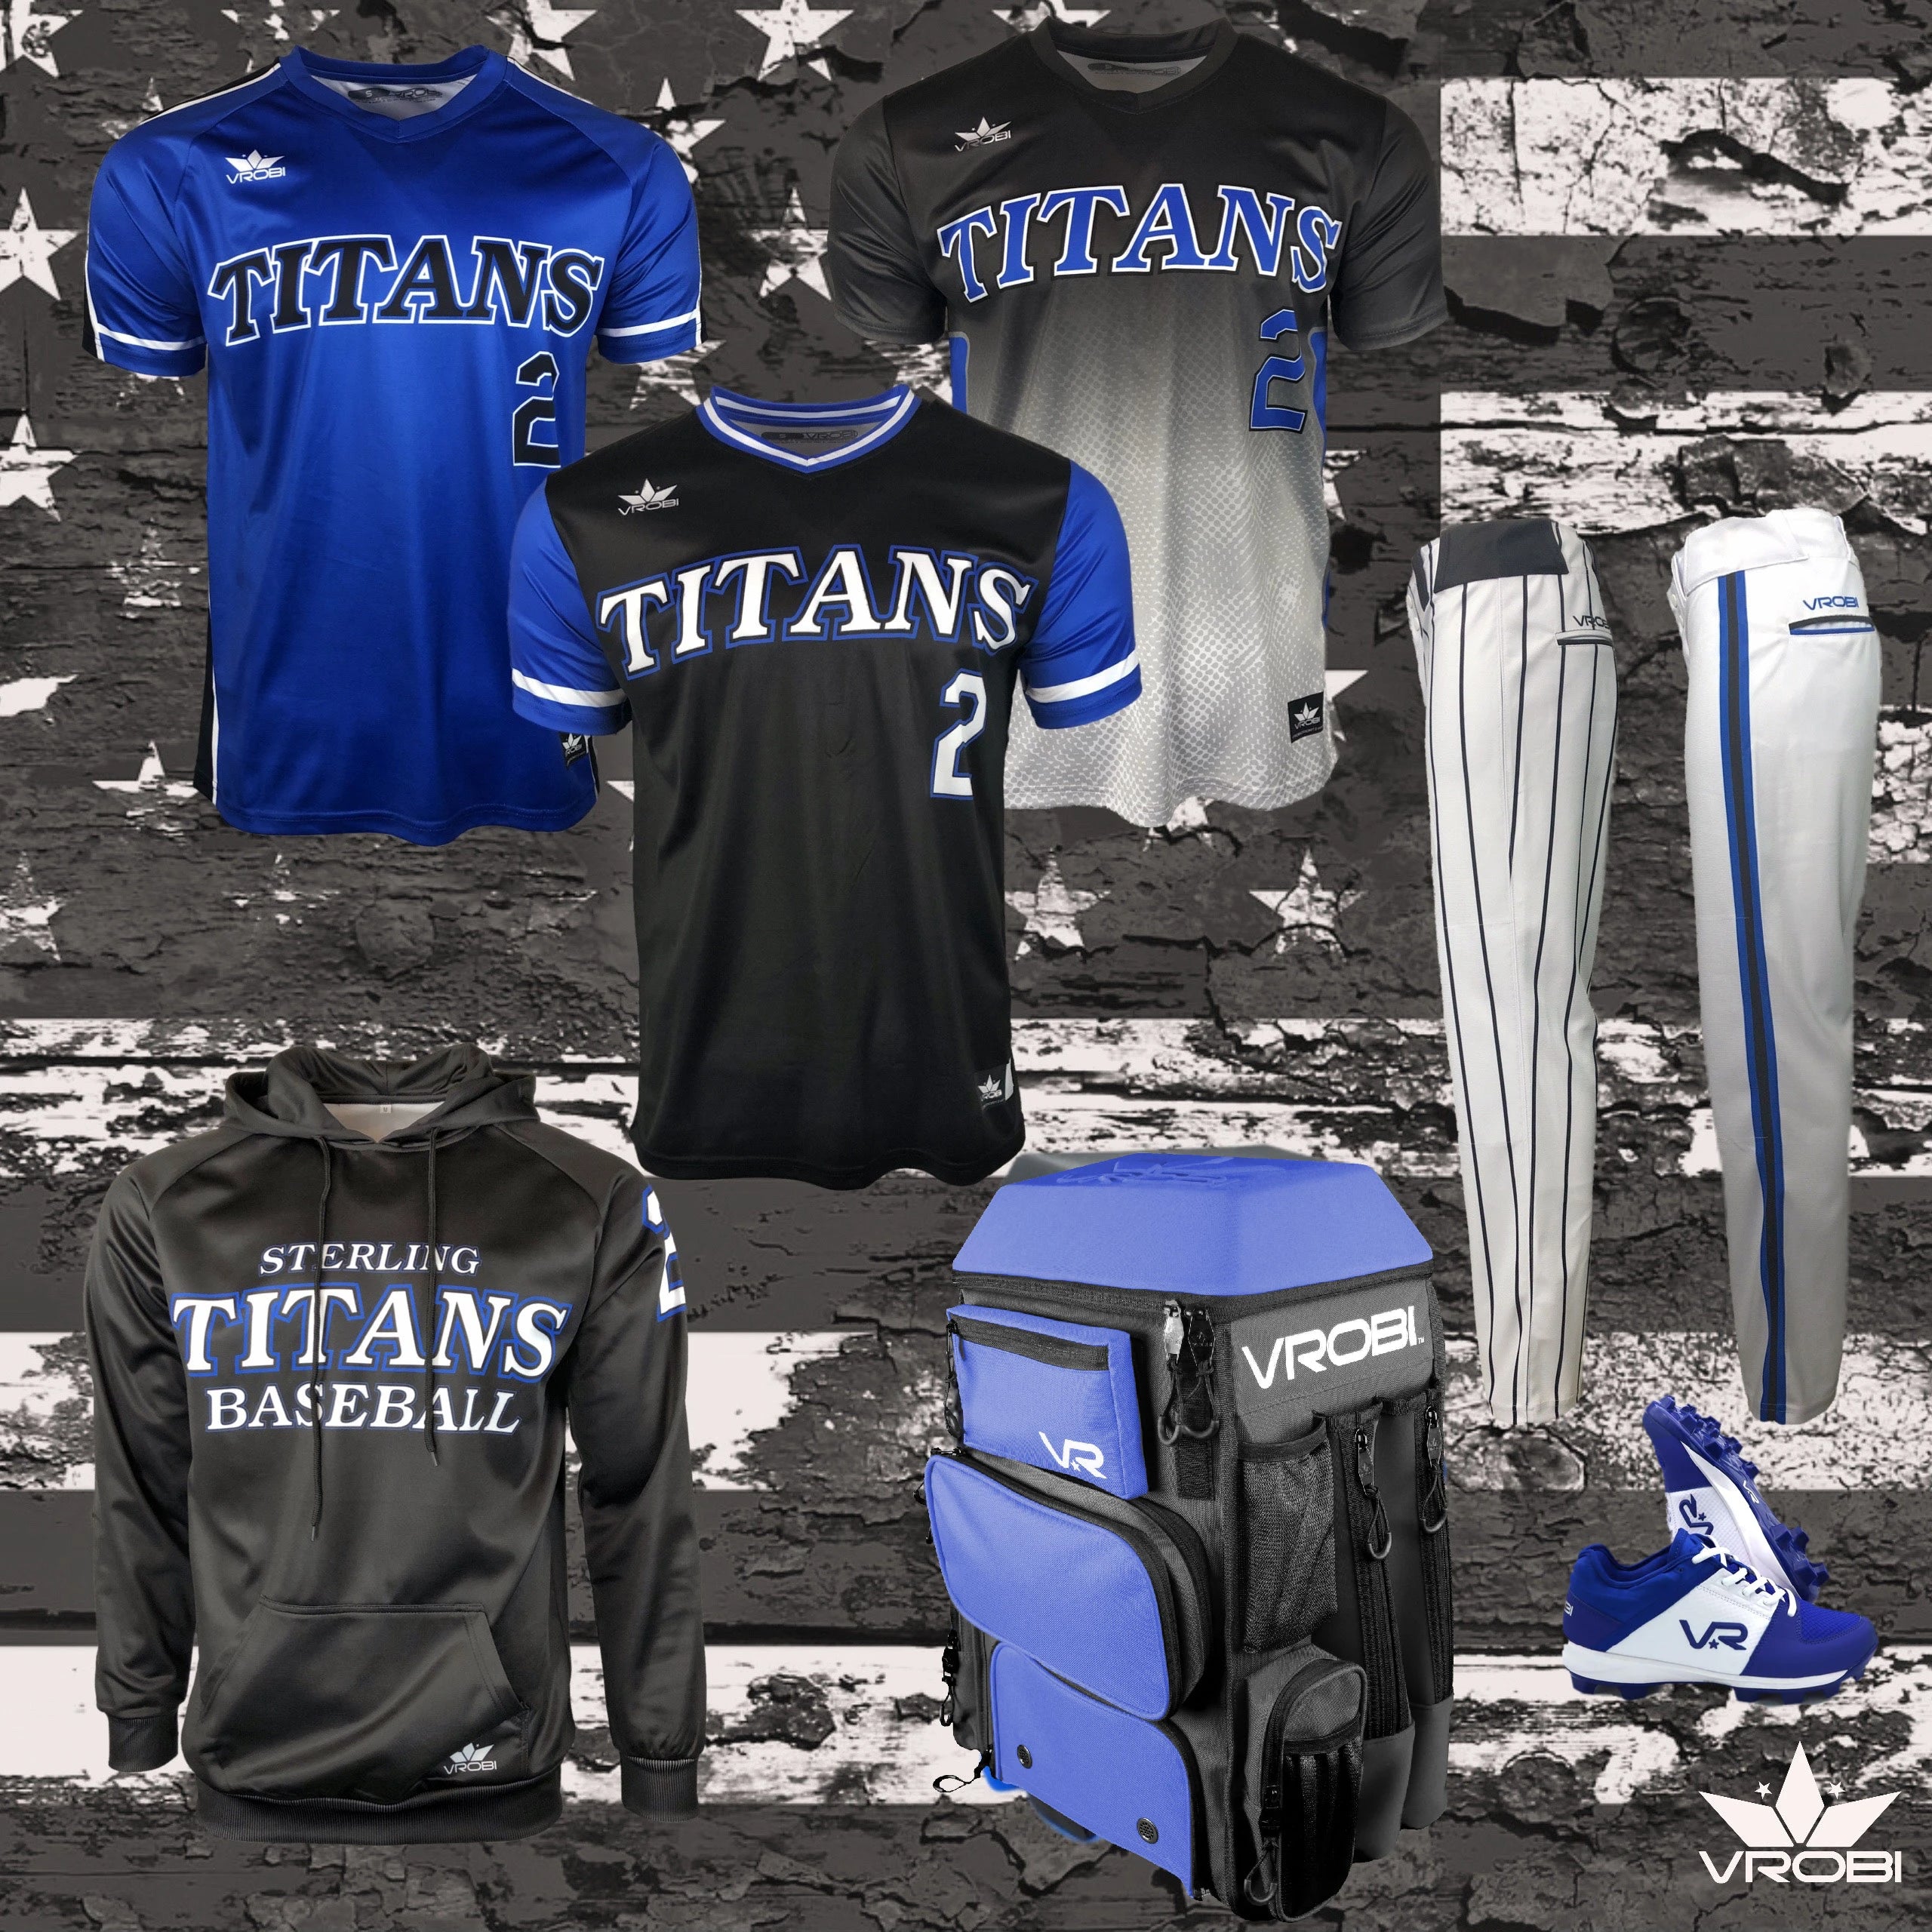 Custom Baseball Jerseys for Teams - Sports Custom Uniform